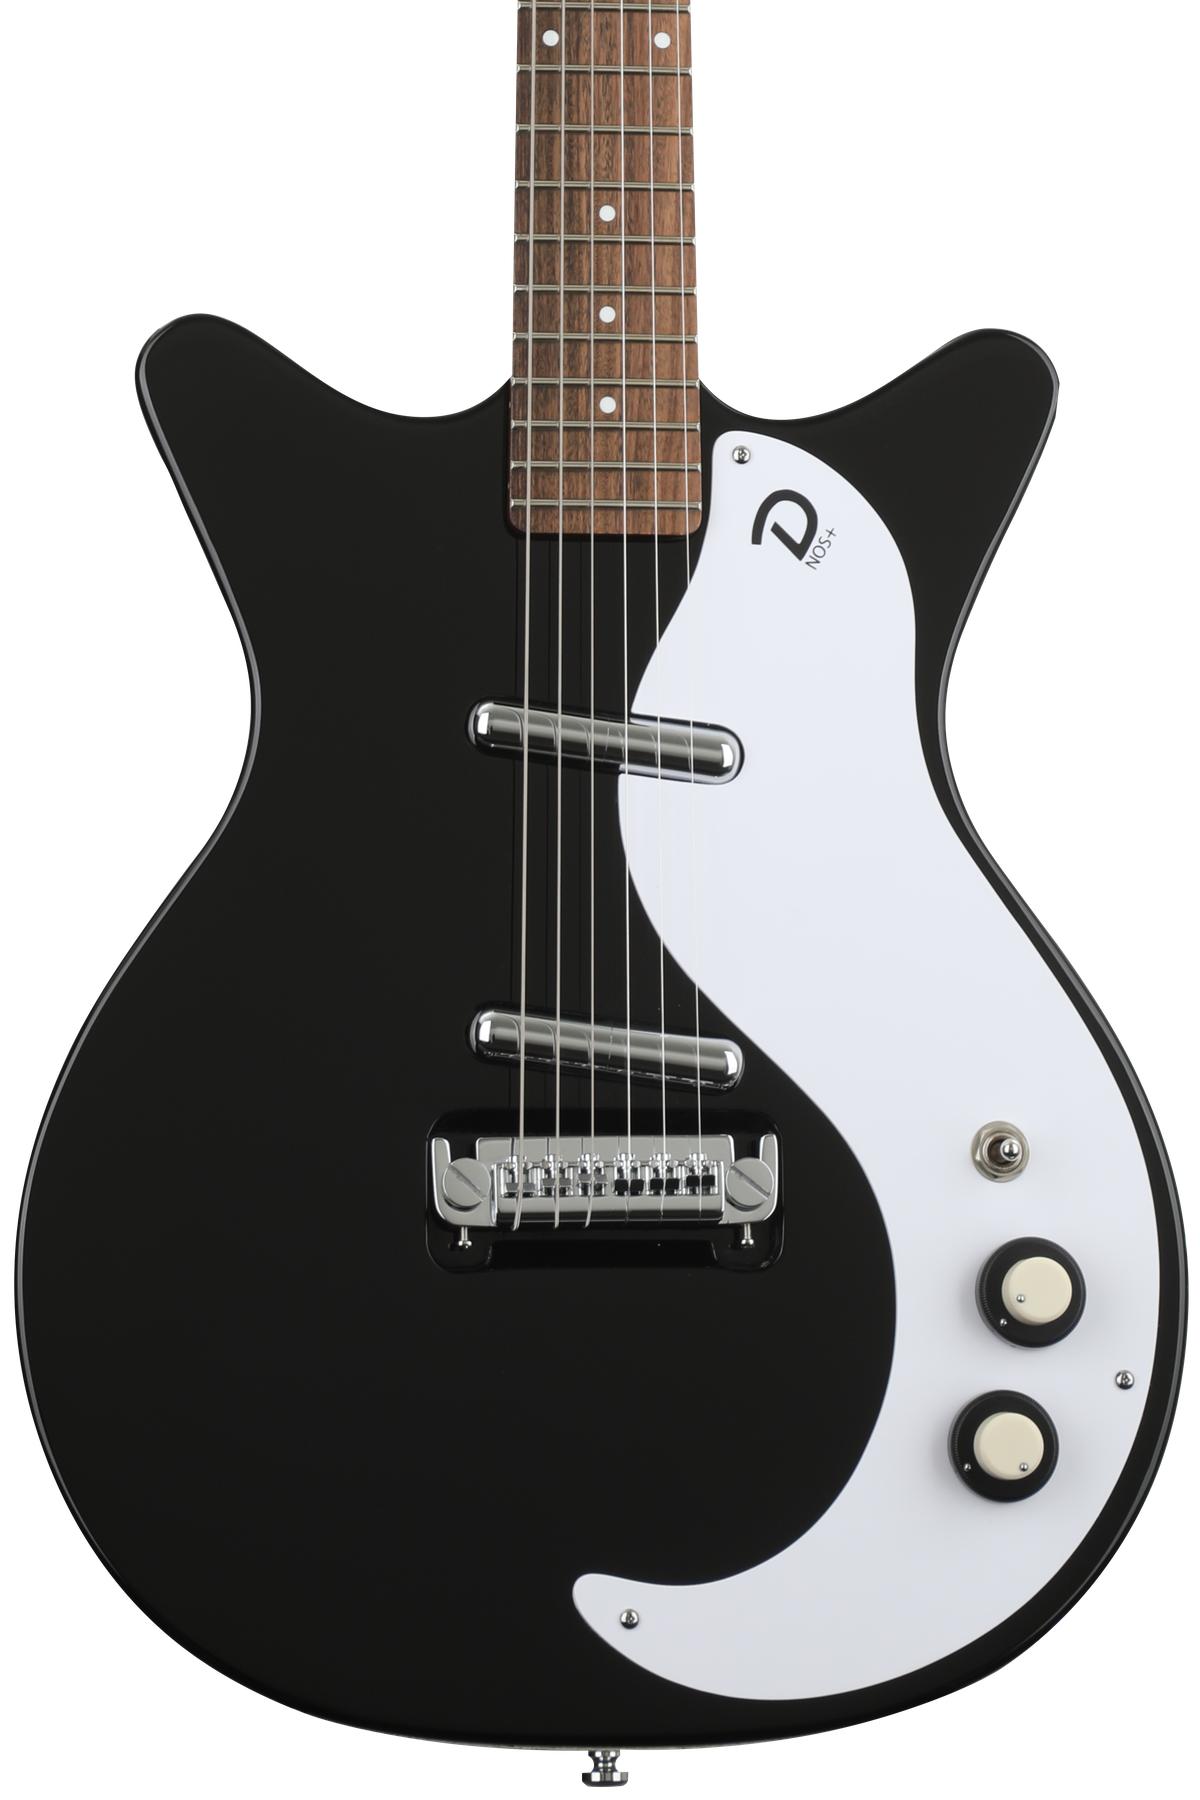 Danelectro '59M NOS+ Semi-hollowbody Electric Guitar - Black